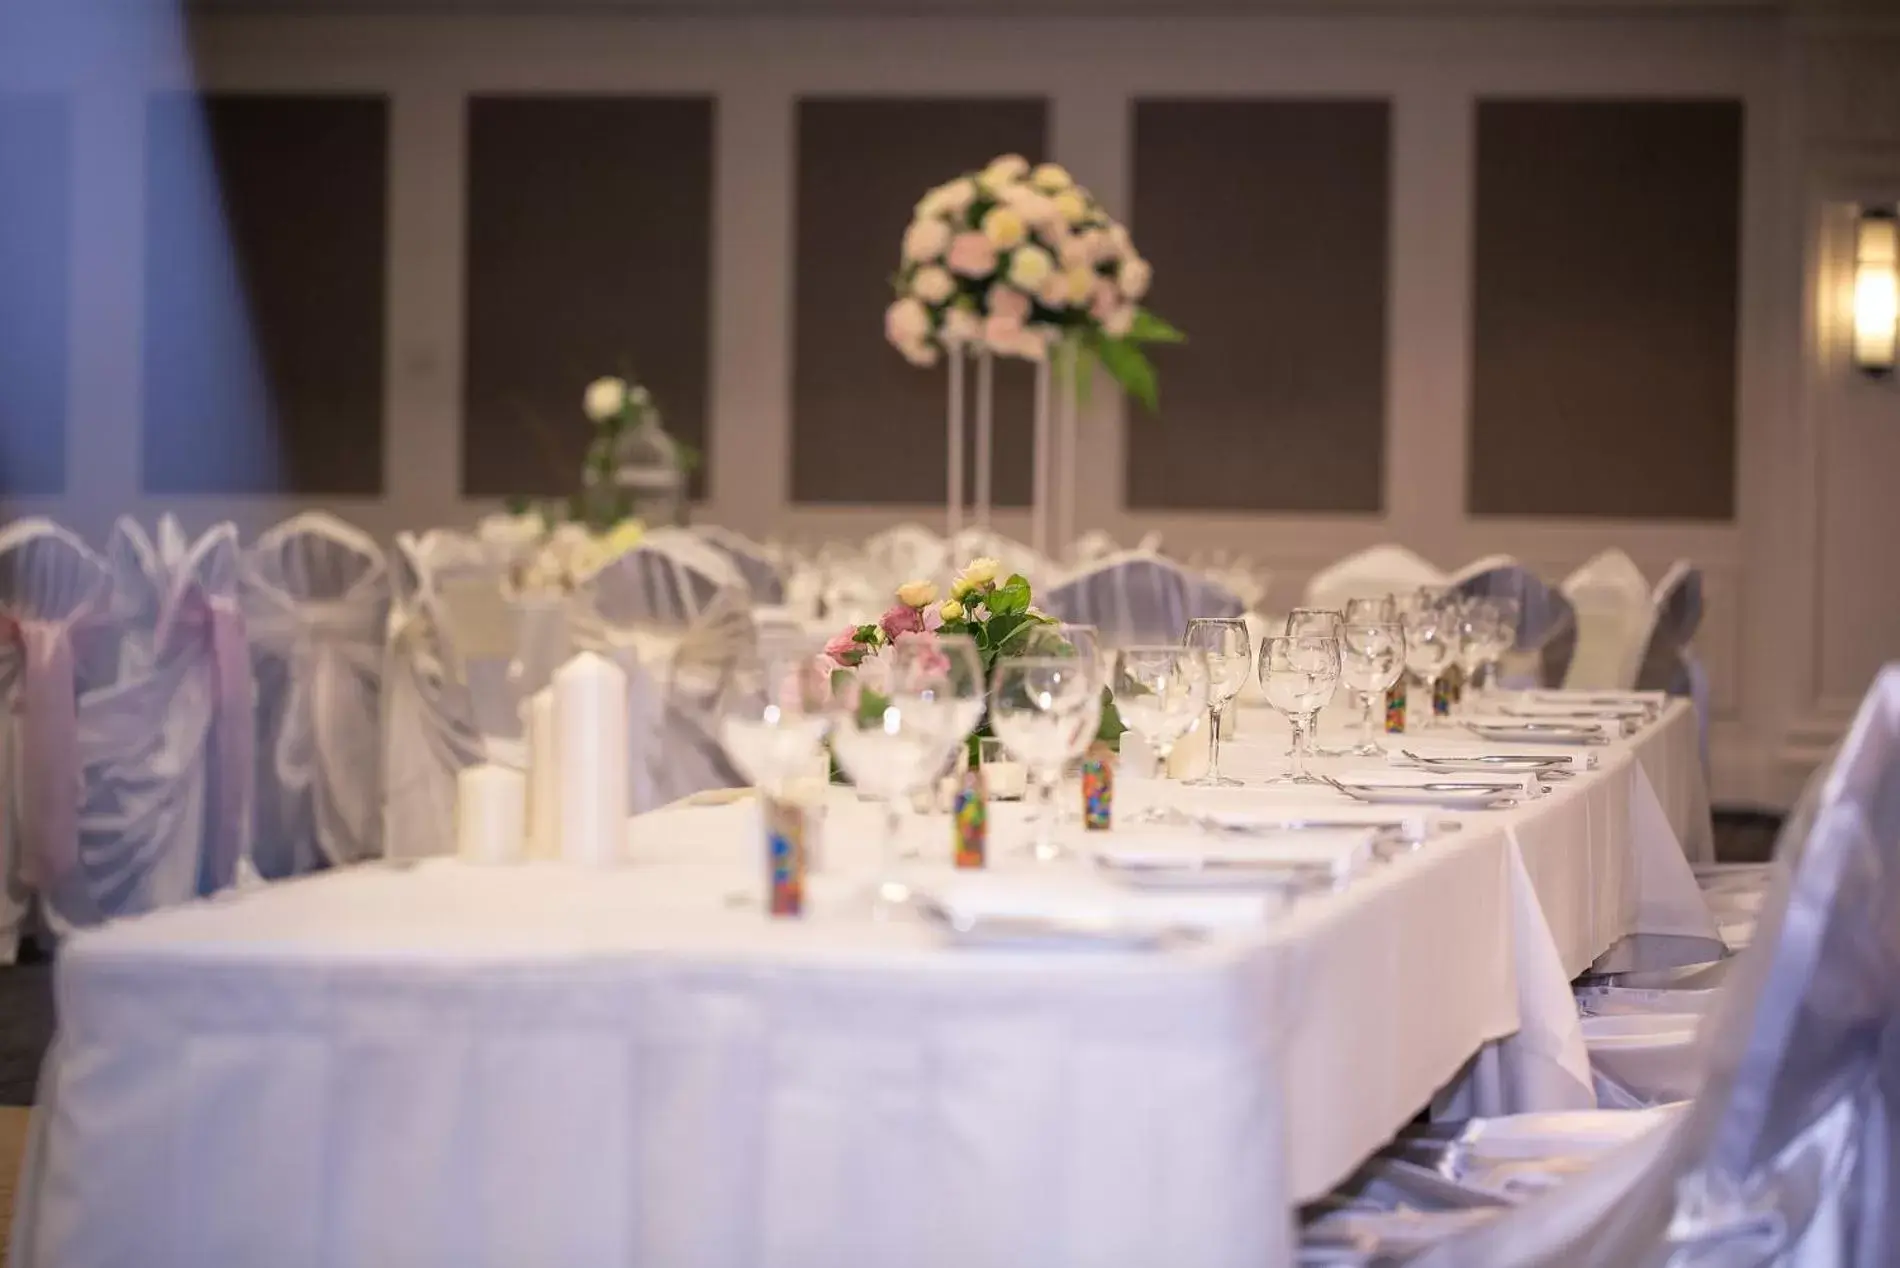 Banquet/Function facilities, Banquet Facilities in Swissotel Sydney